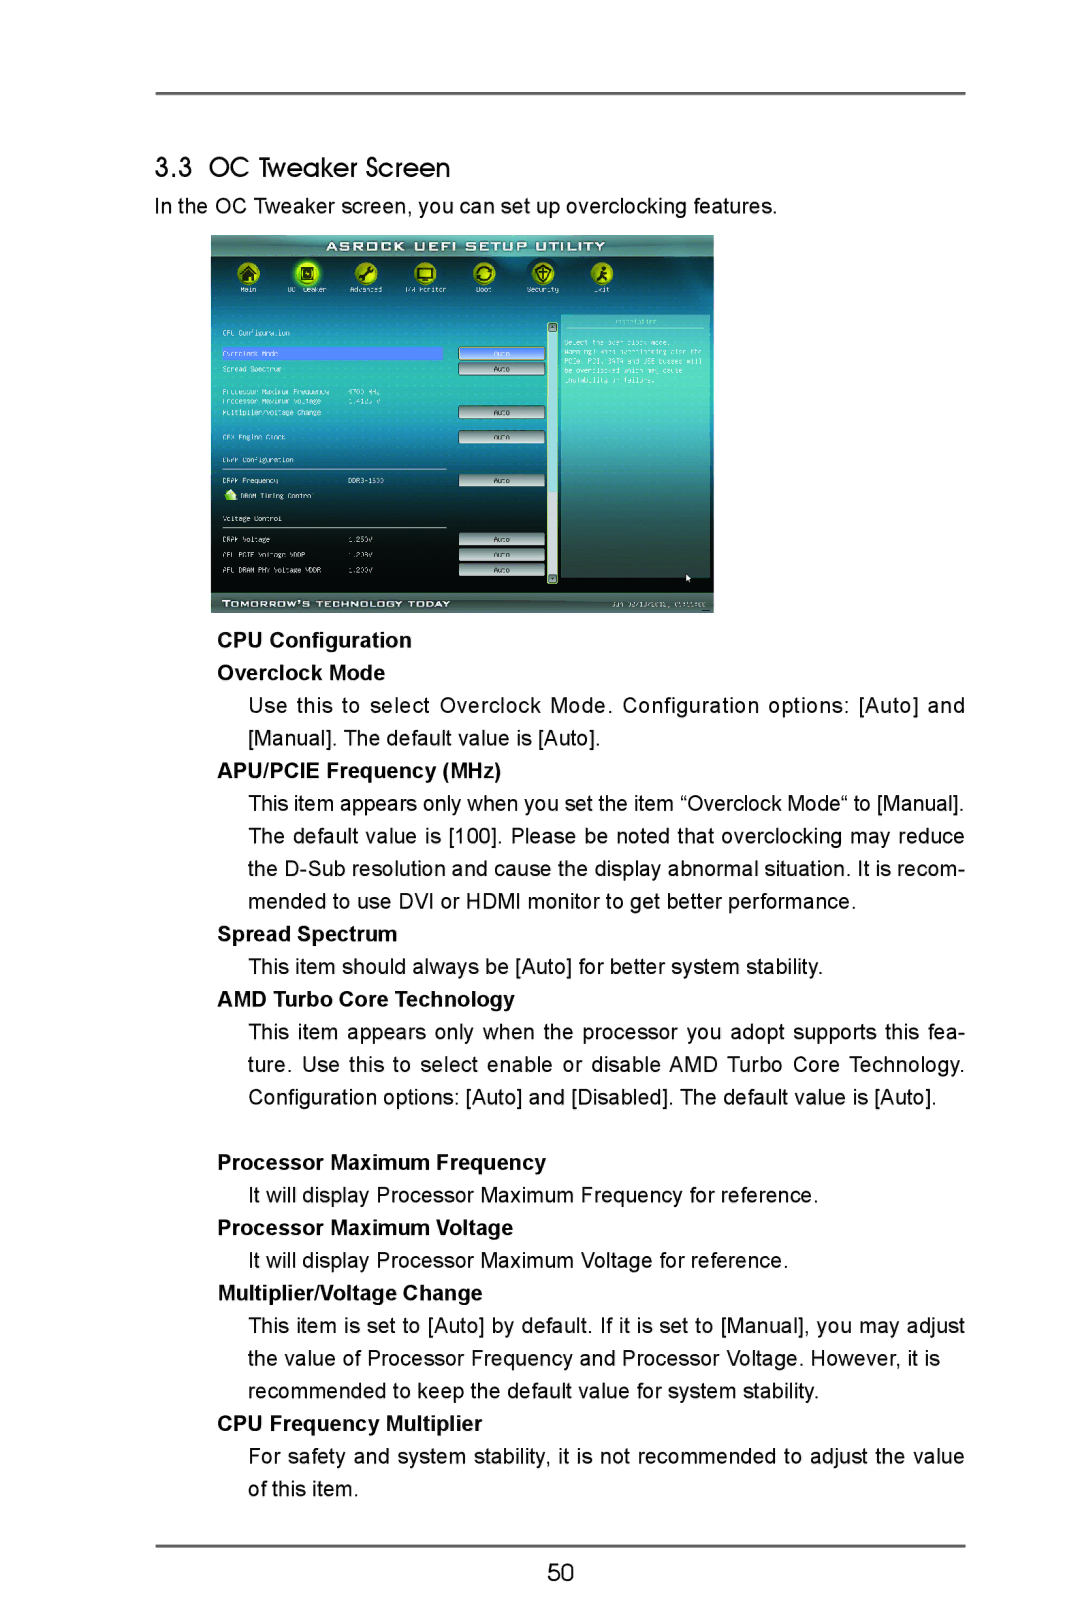 ASRock A75 Pro4/MVP manual OC Tweaker Screen 